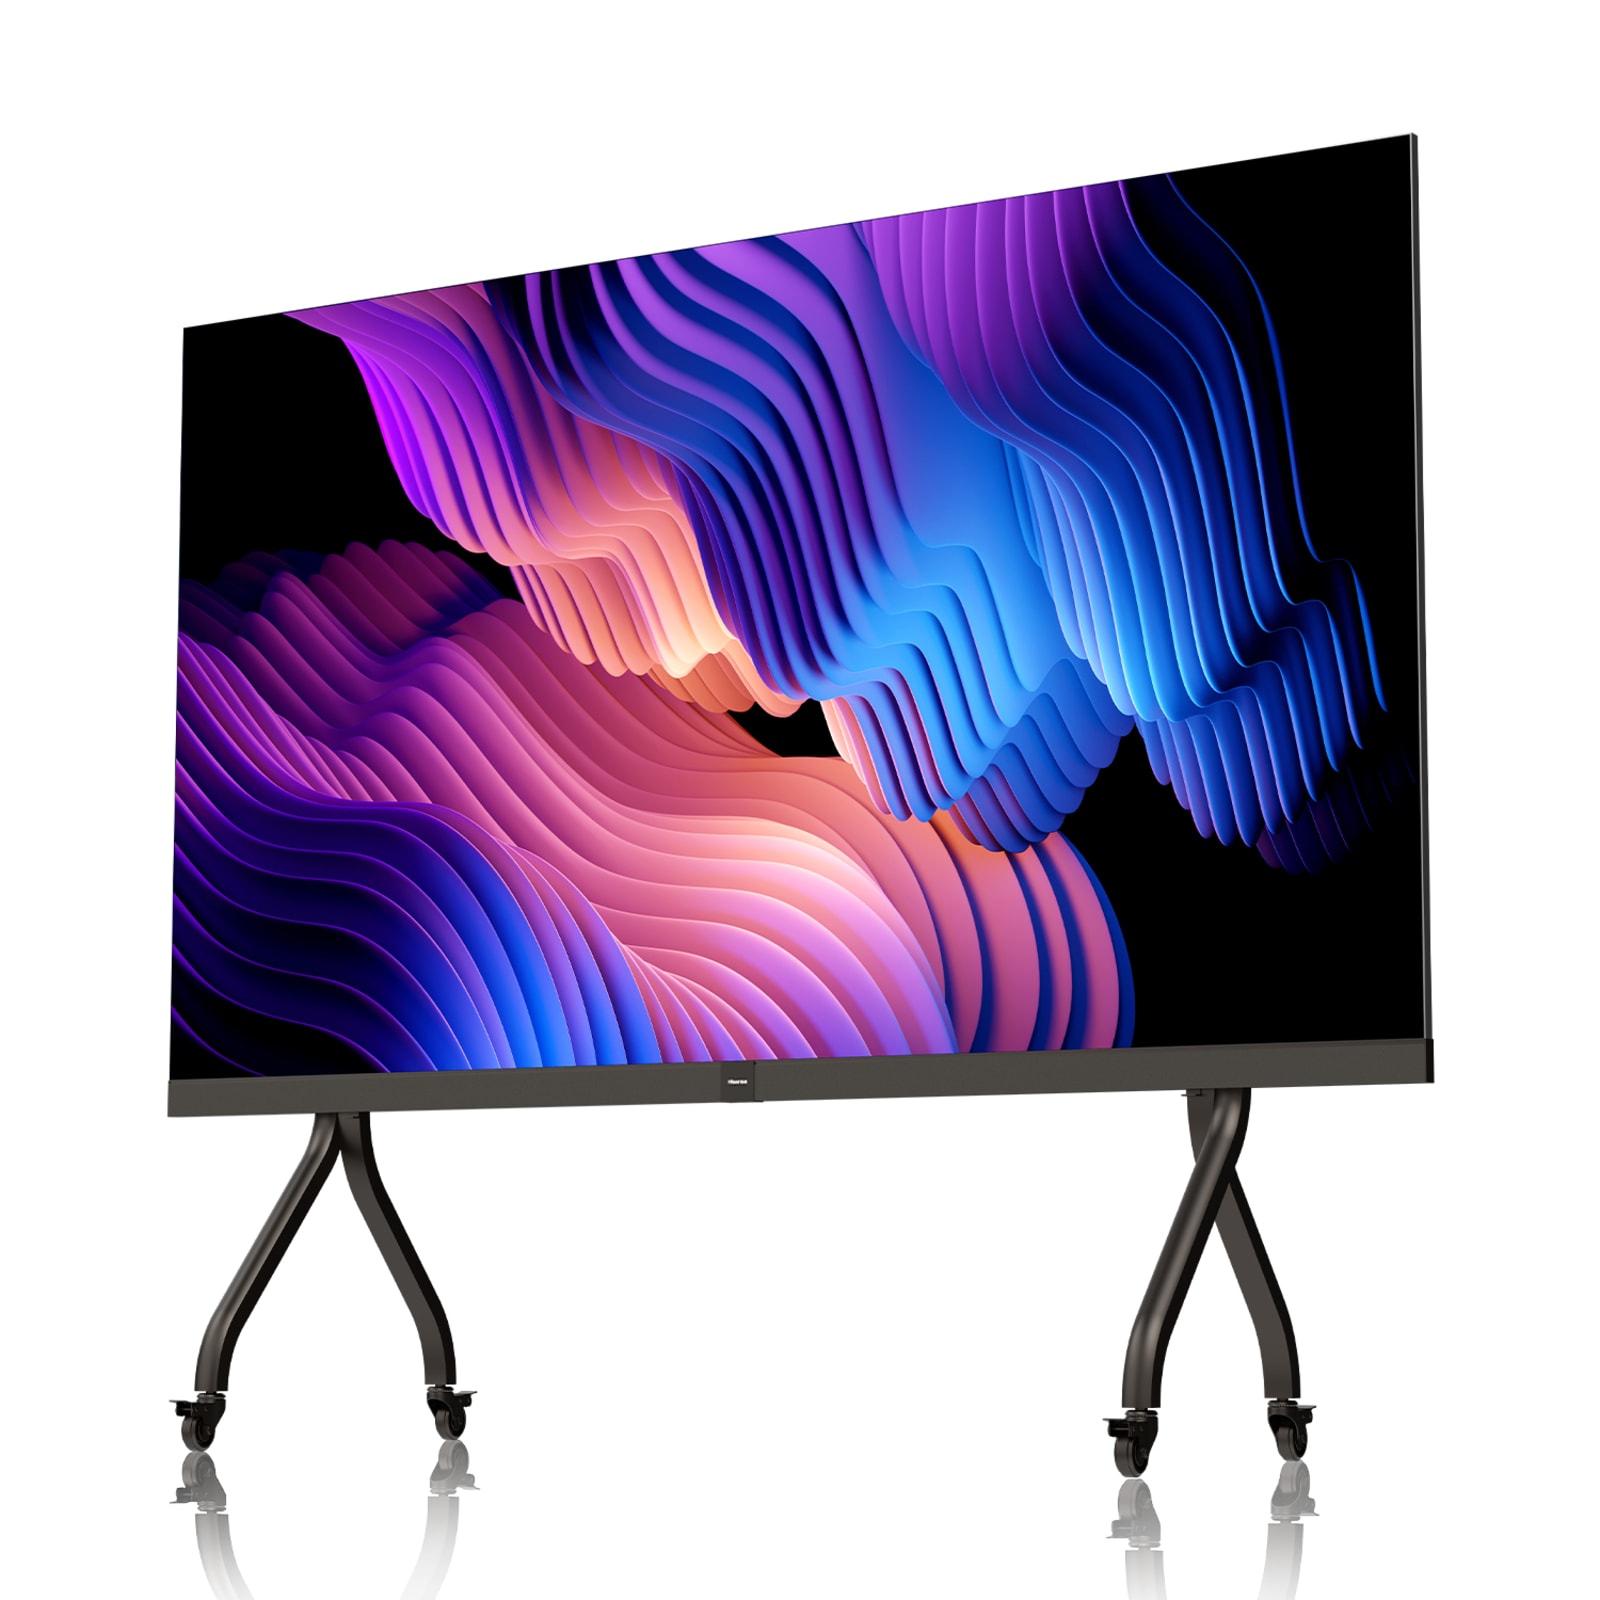 Samsung LED TV 5000, televisores LED de hasta 50 pulgadas